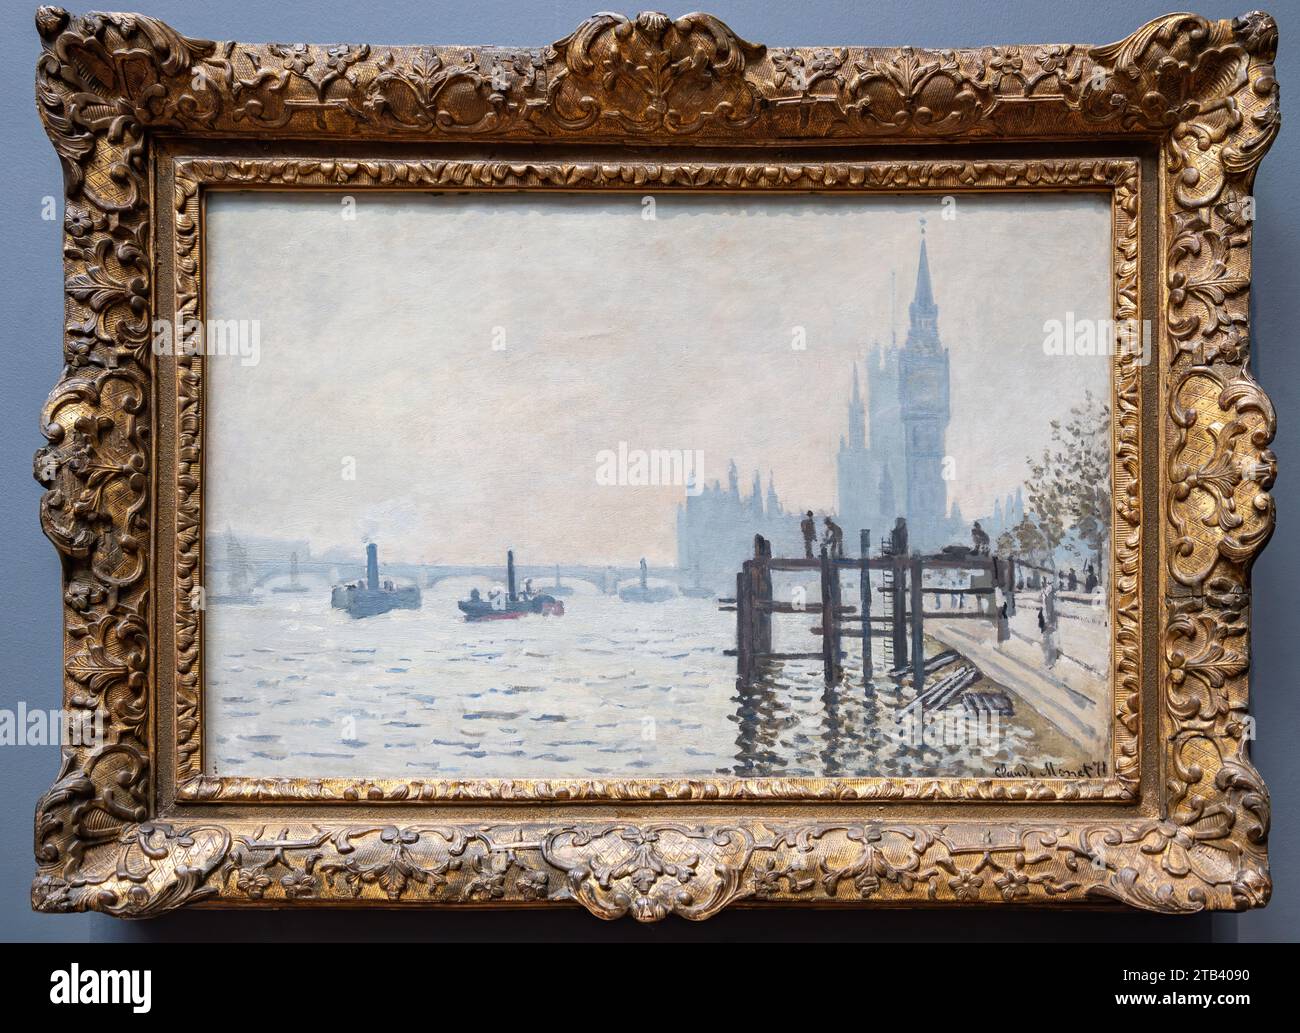 Londra, Regno Unito - 19 maggio 2023: Il Tamigi sotto Westminster dell'impressionista francese Claude Monet, esposto alla National Gallery di Londra Foto Stock